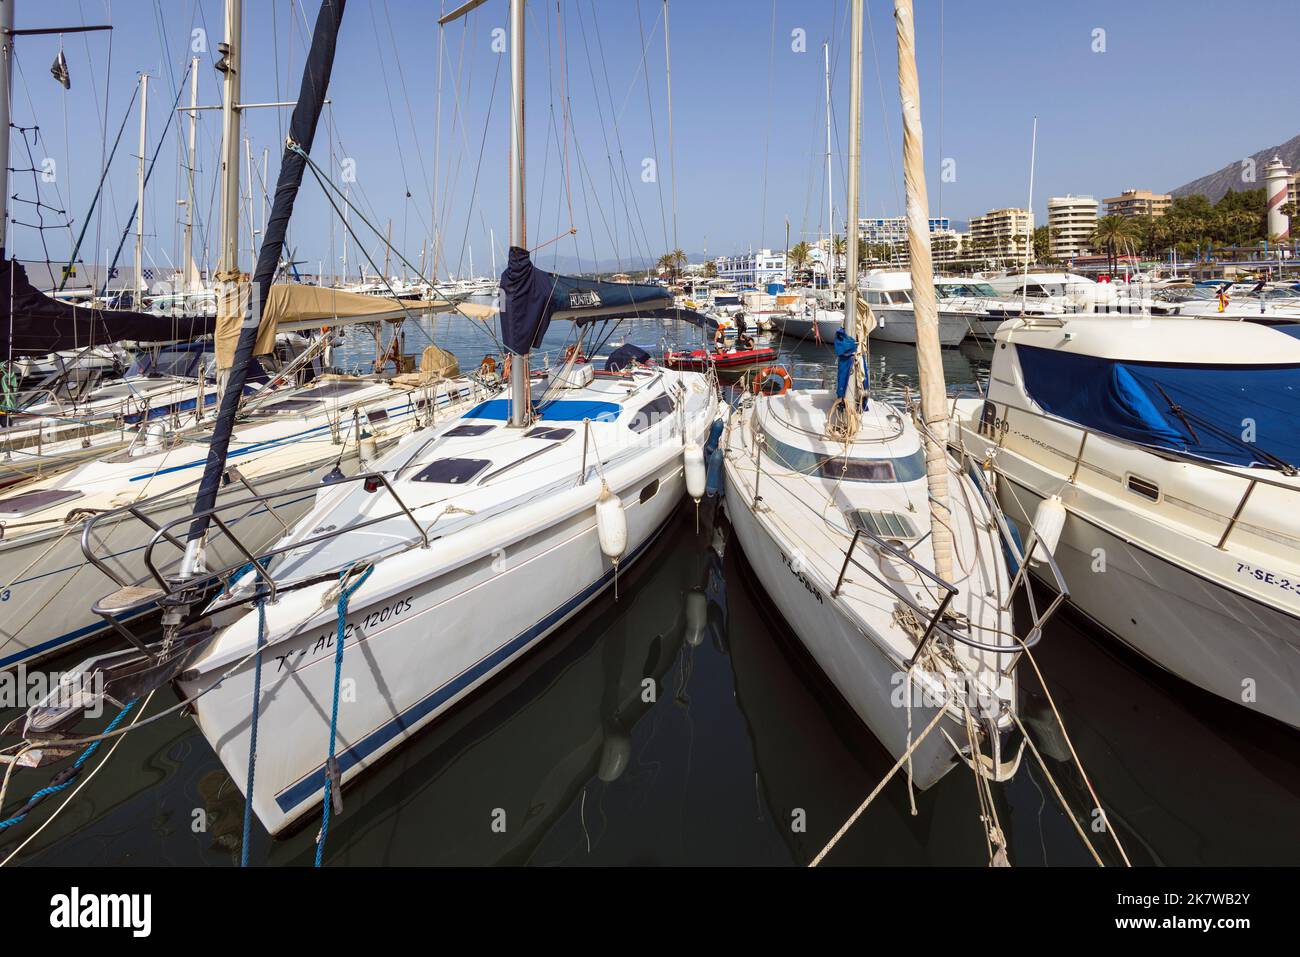 Puerto Deportivo o il porto sportivo sul lungomare della città di Marbella. Marbella, Costa del Sol, Provincia di Malaga, Andalusia, Spagna meridionale Foto Stock